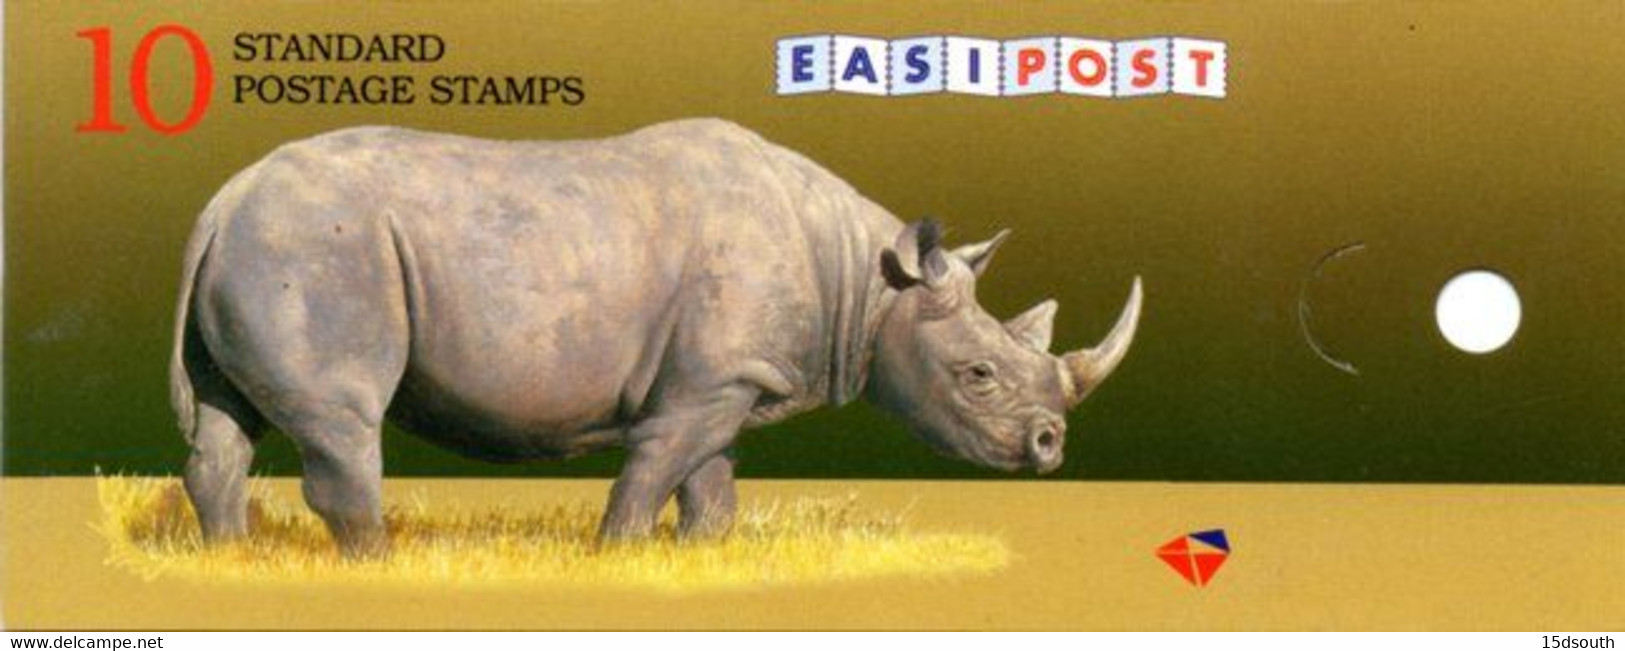 South Africa - 1997 Rhino ILSAPEX 98 R10 Booklet # SB39 - Cuadernillos